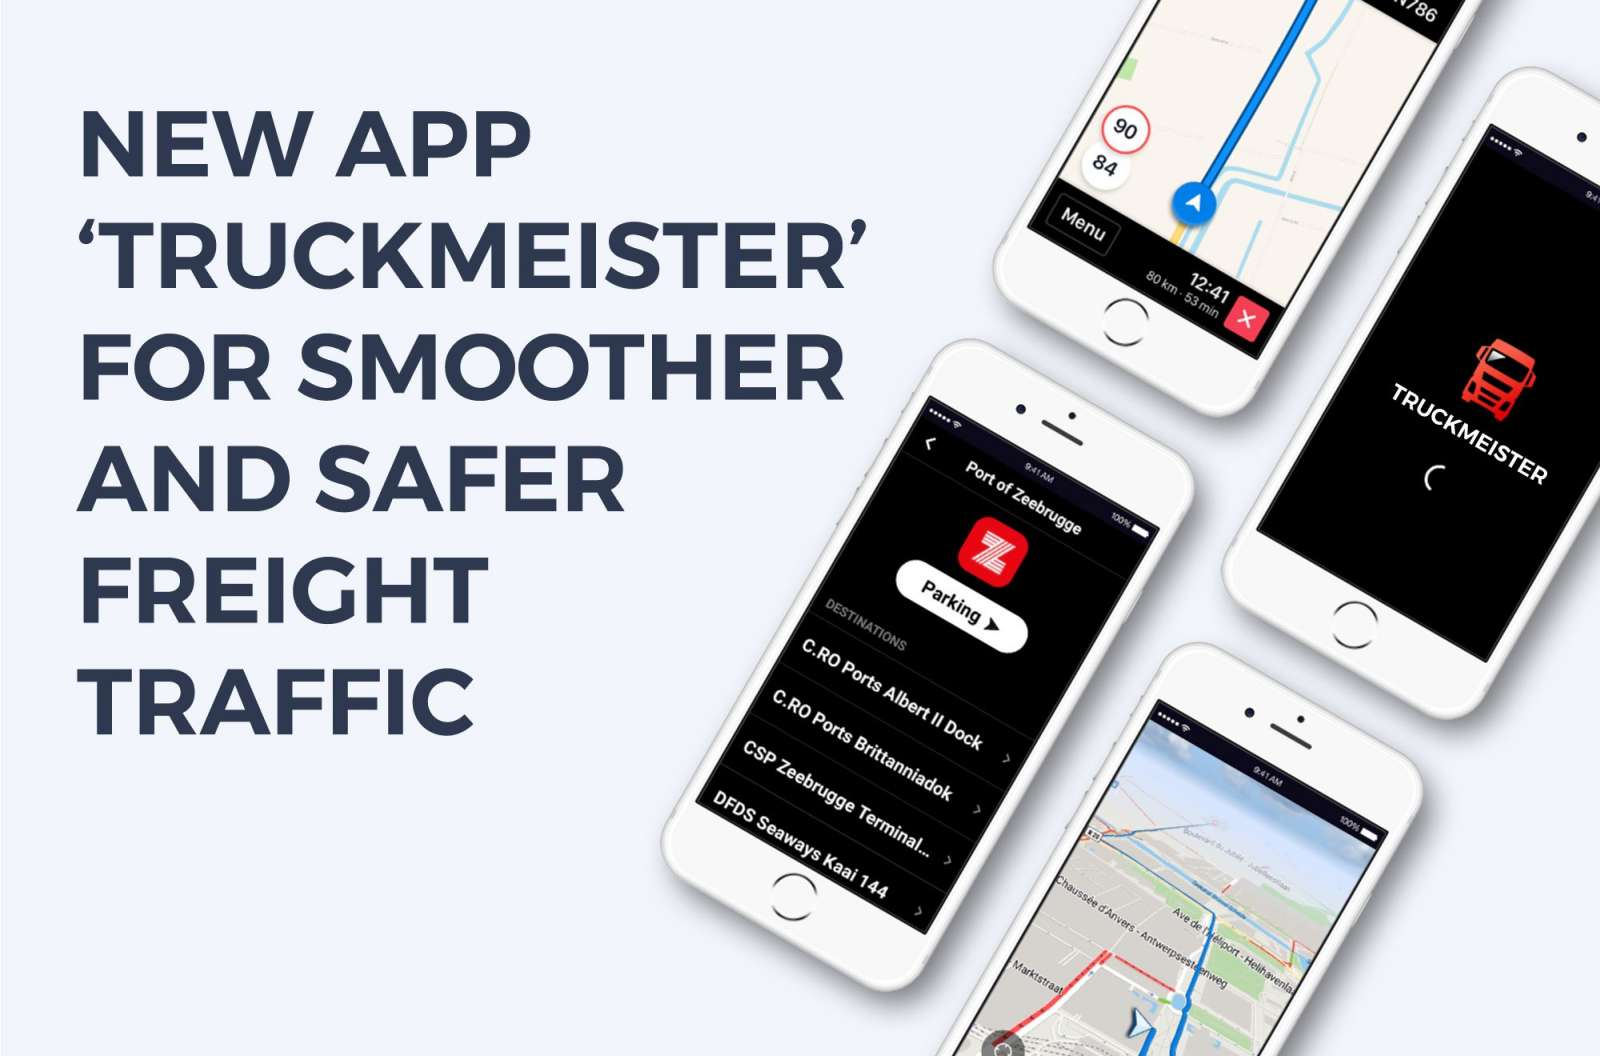 Truckmeister app